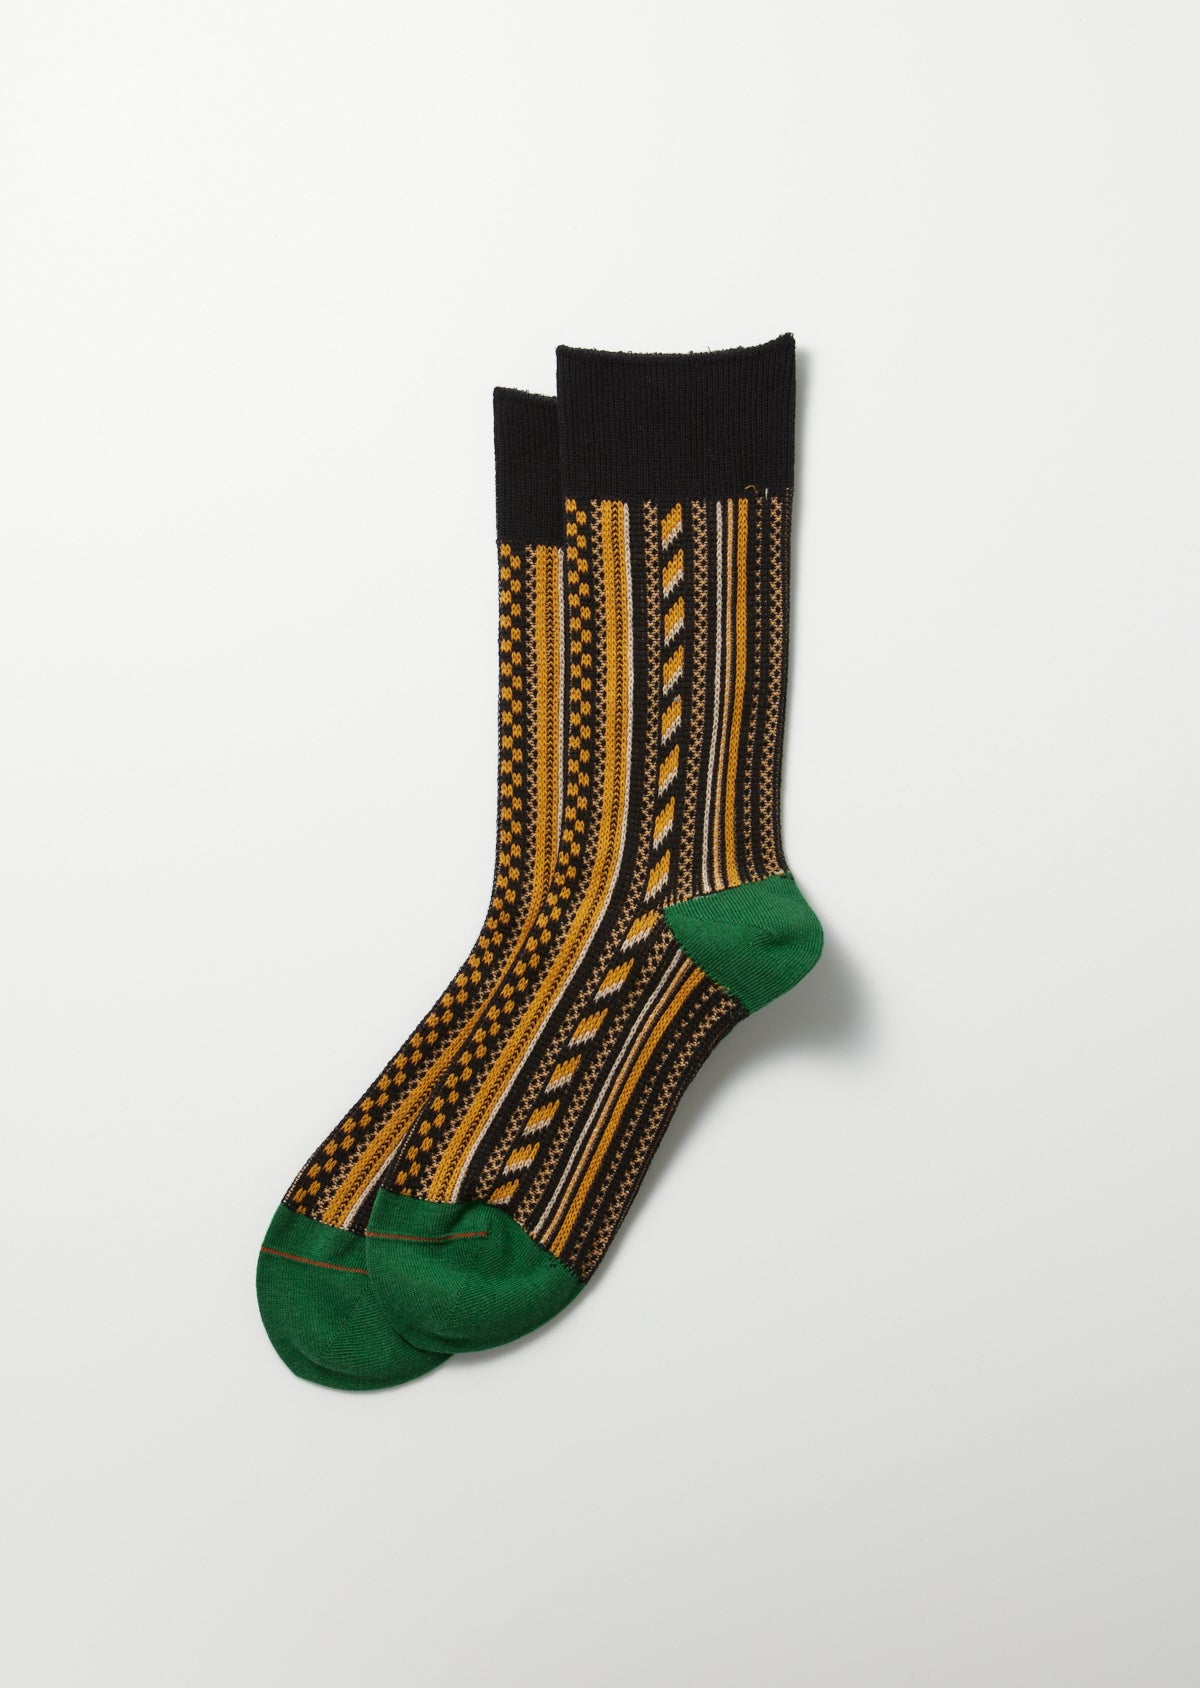 Multi Vertical Socken - schwarz / grün